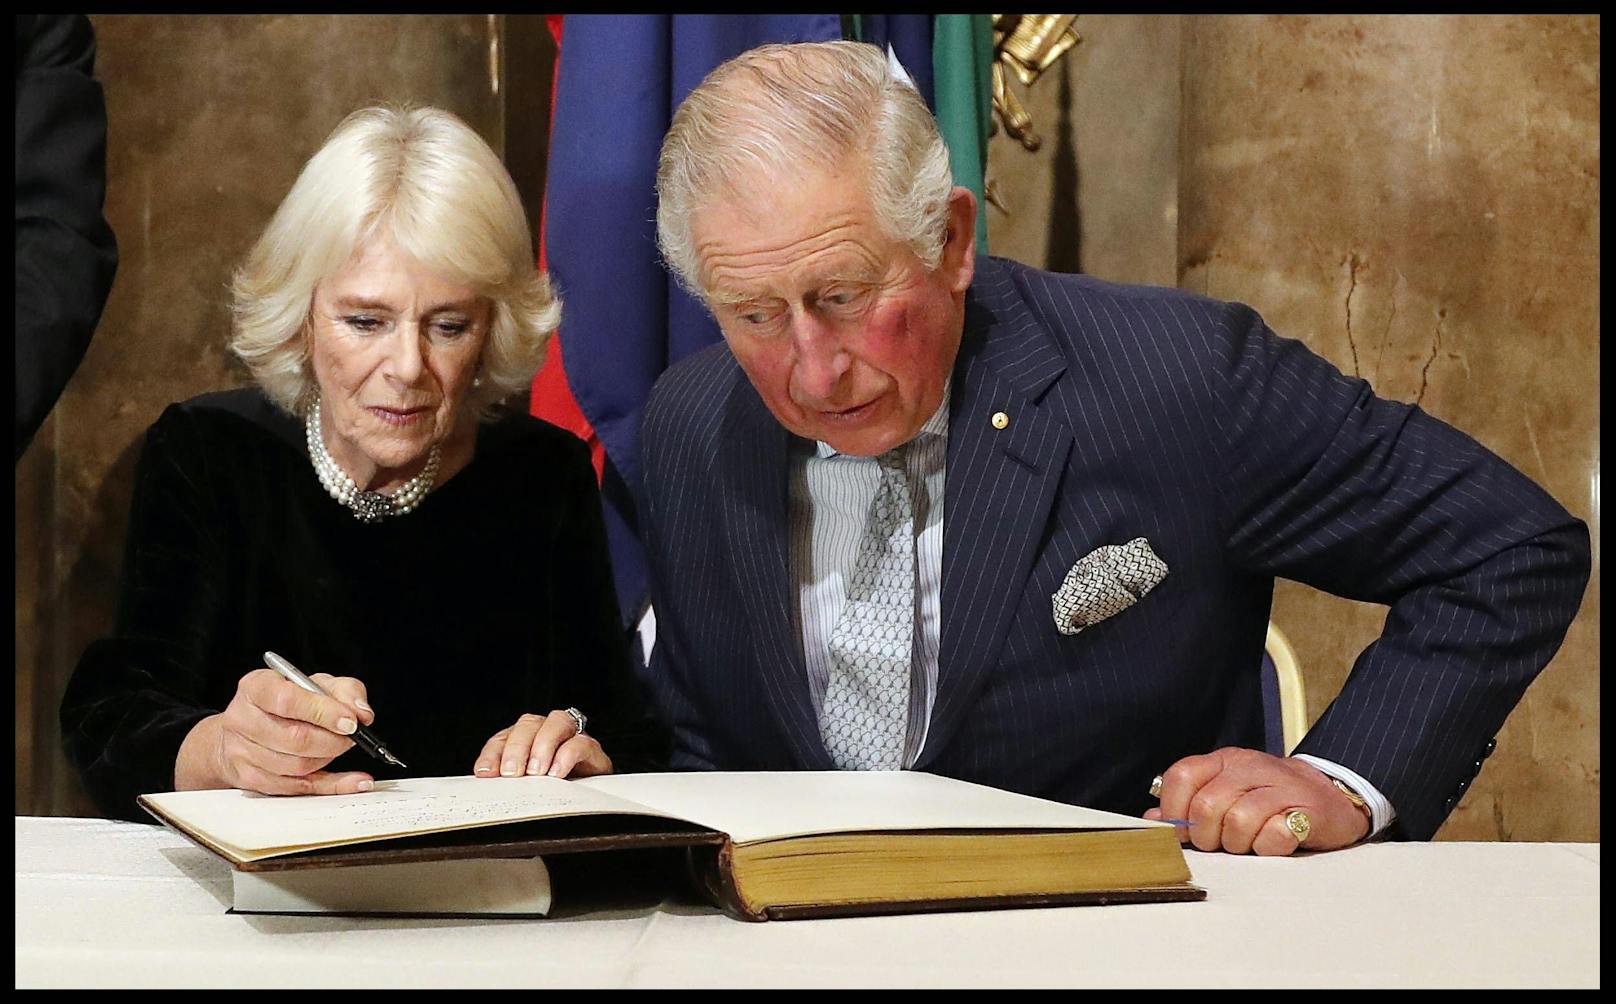 Charles liest sich immer alles genau durch, bevor er und seine Frau etwas unterschreiben.